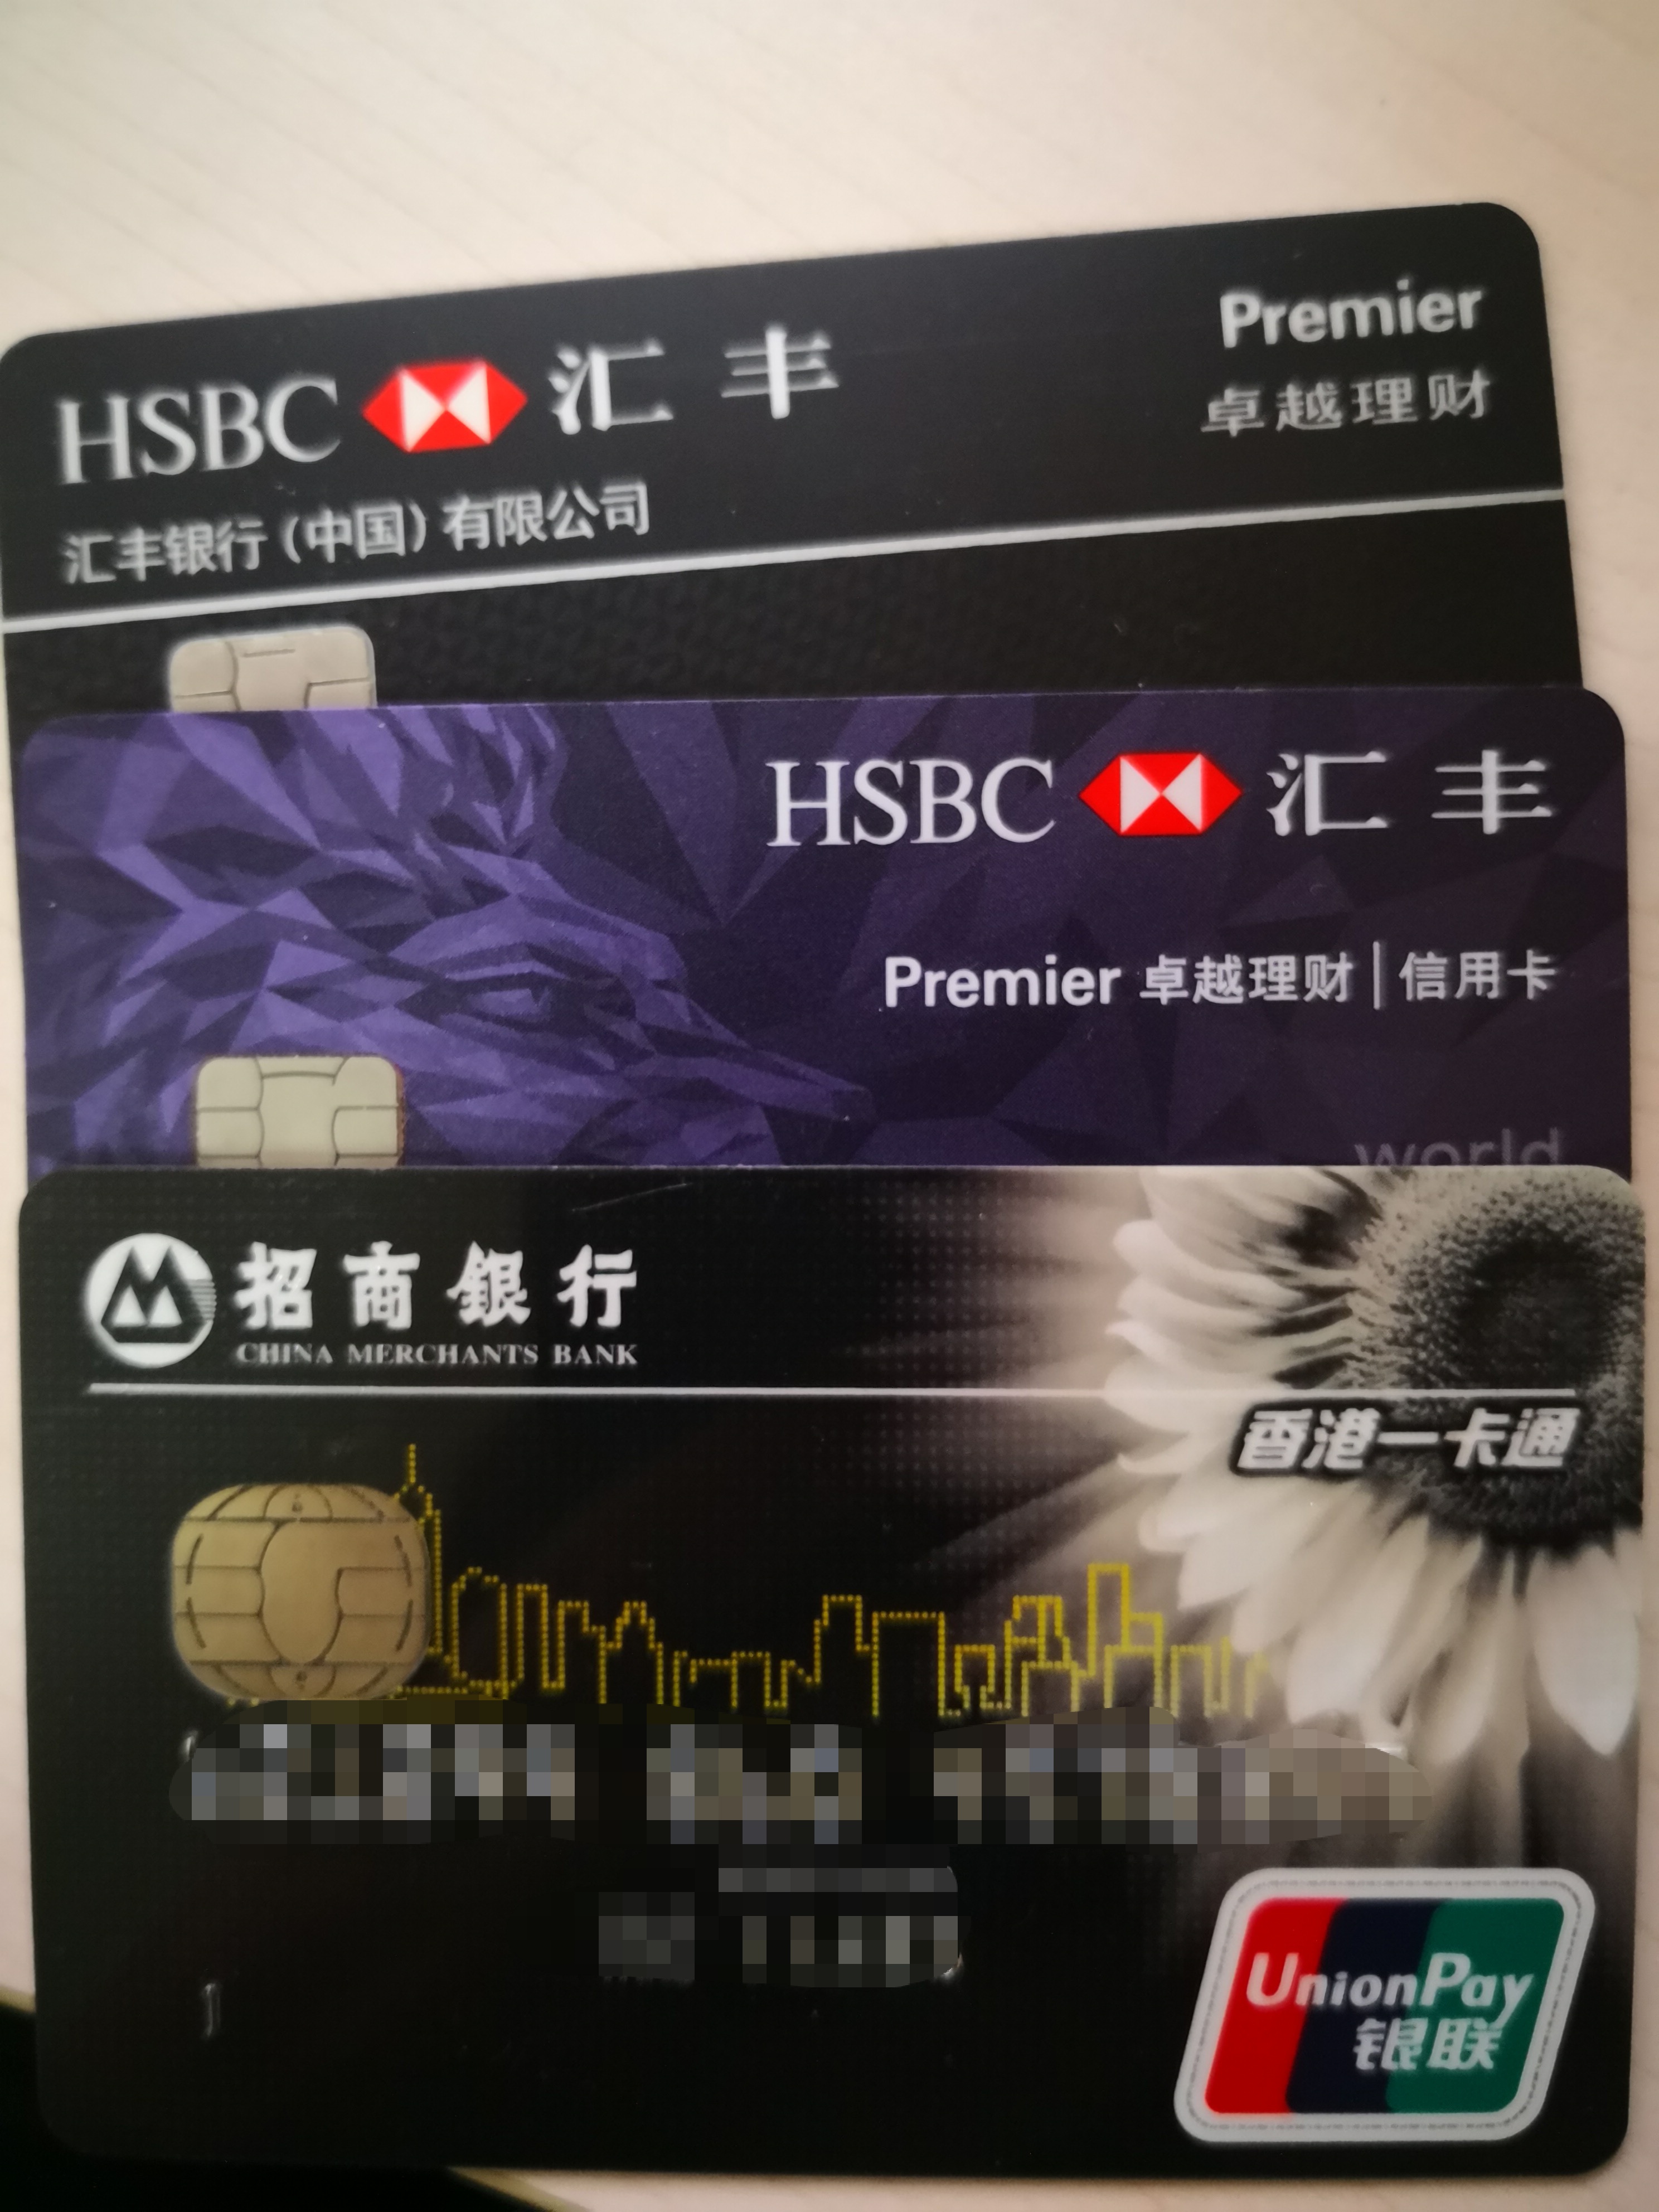  香港办卡要多少钱? 经验